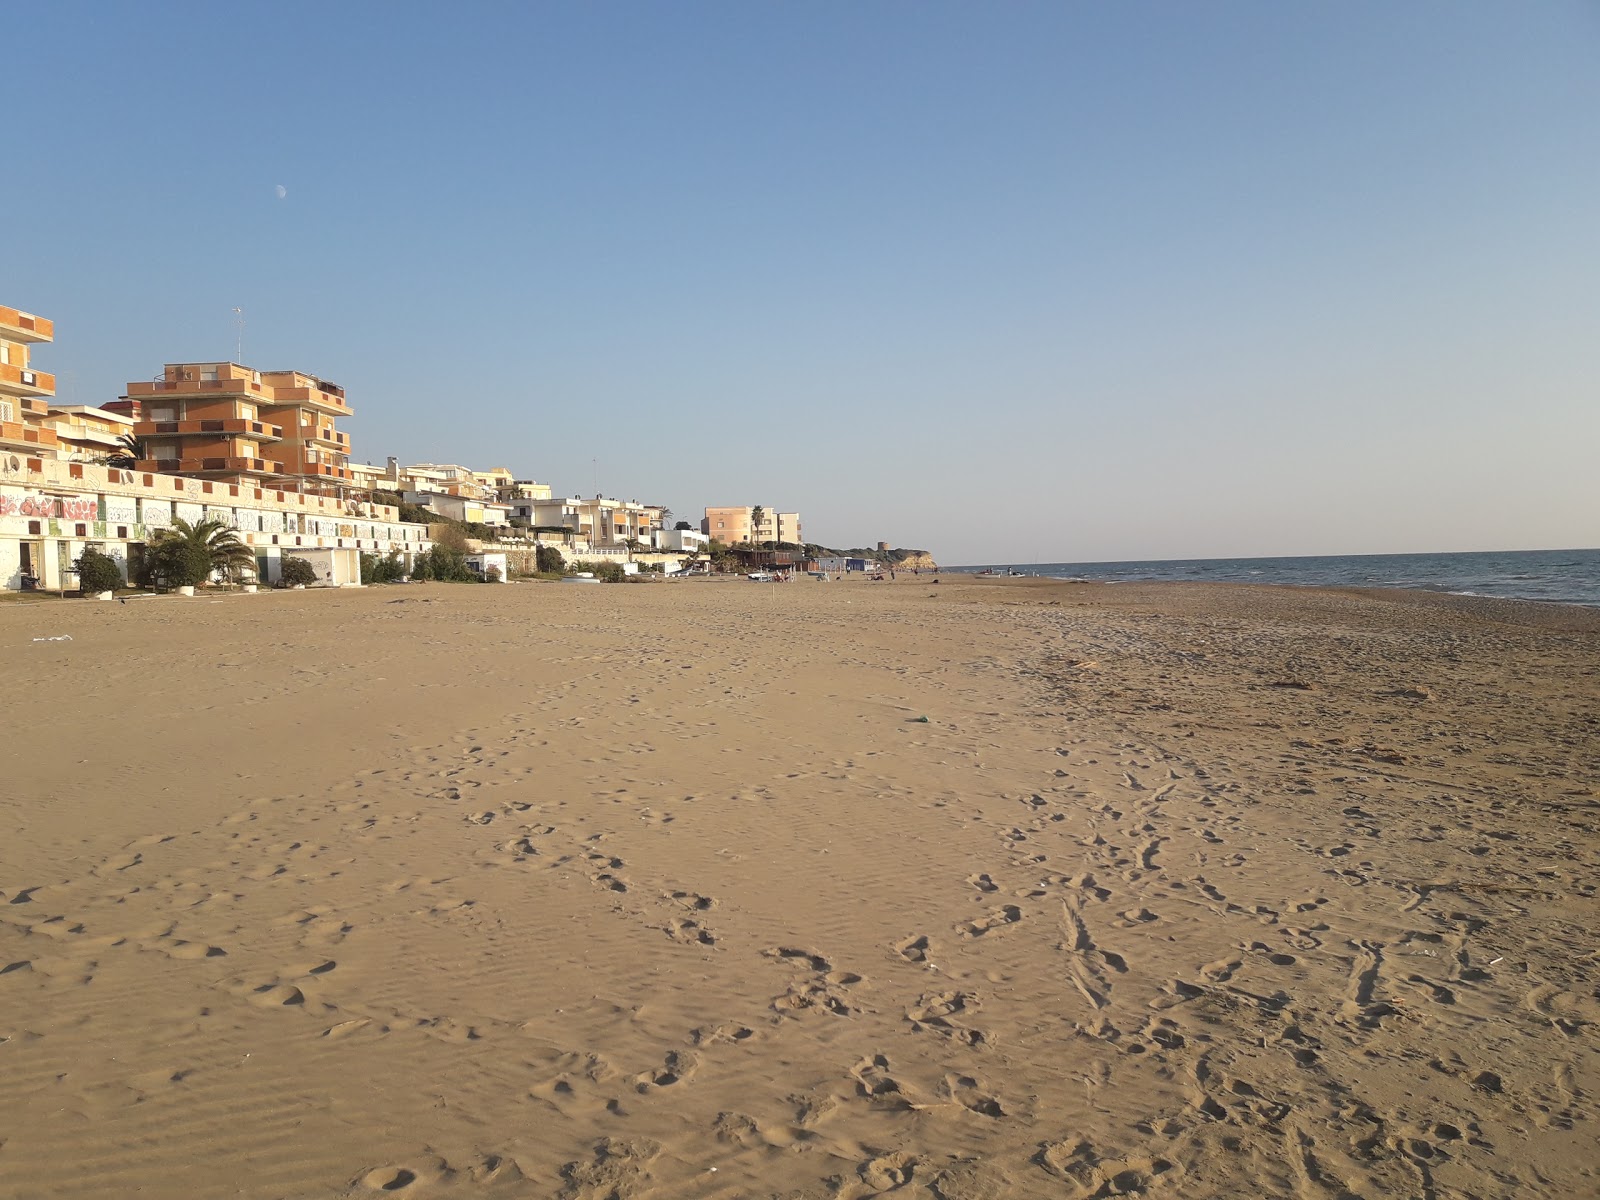 Photo de Lavinio beach - endroit populaire parmi les connaisseurs de la détente